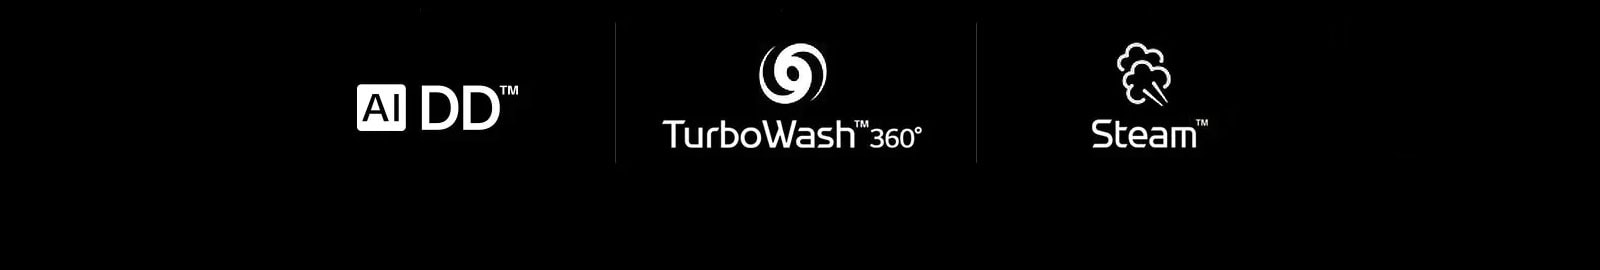 AI DD™ TurboWash™ Steam™ 